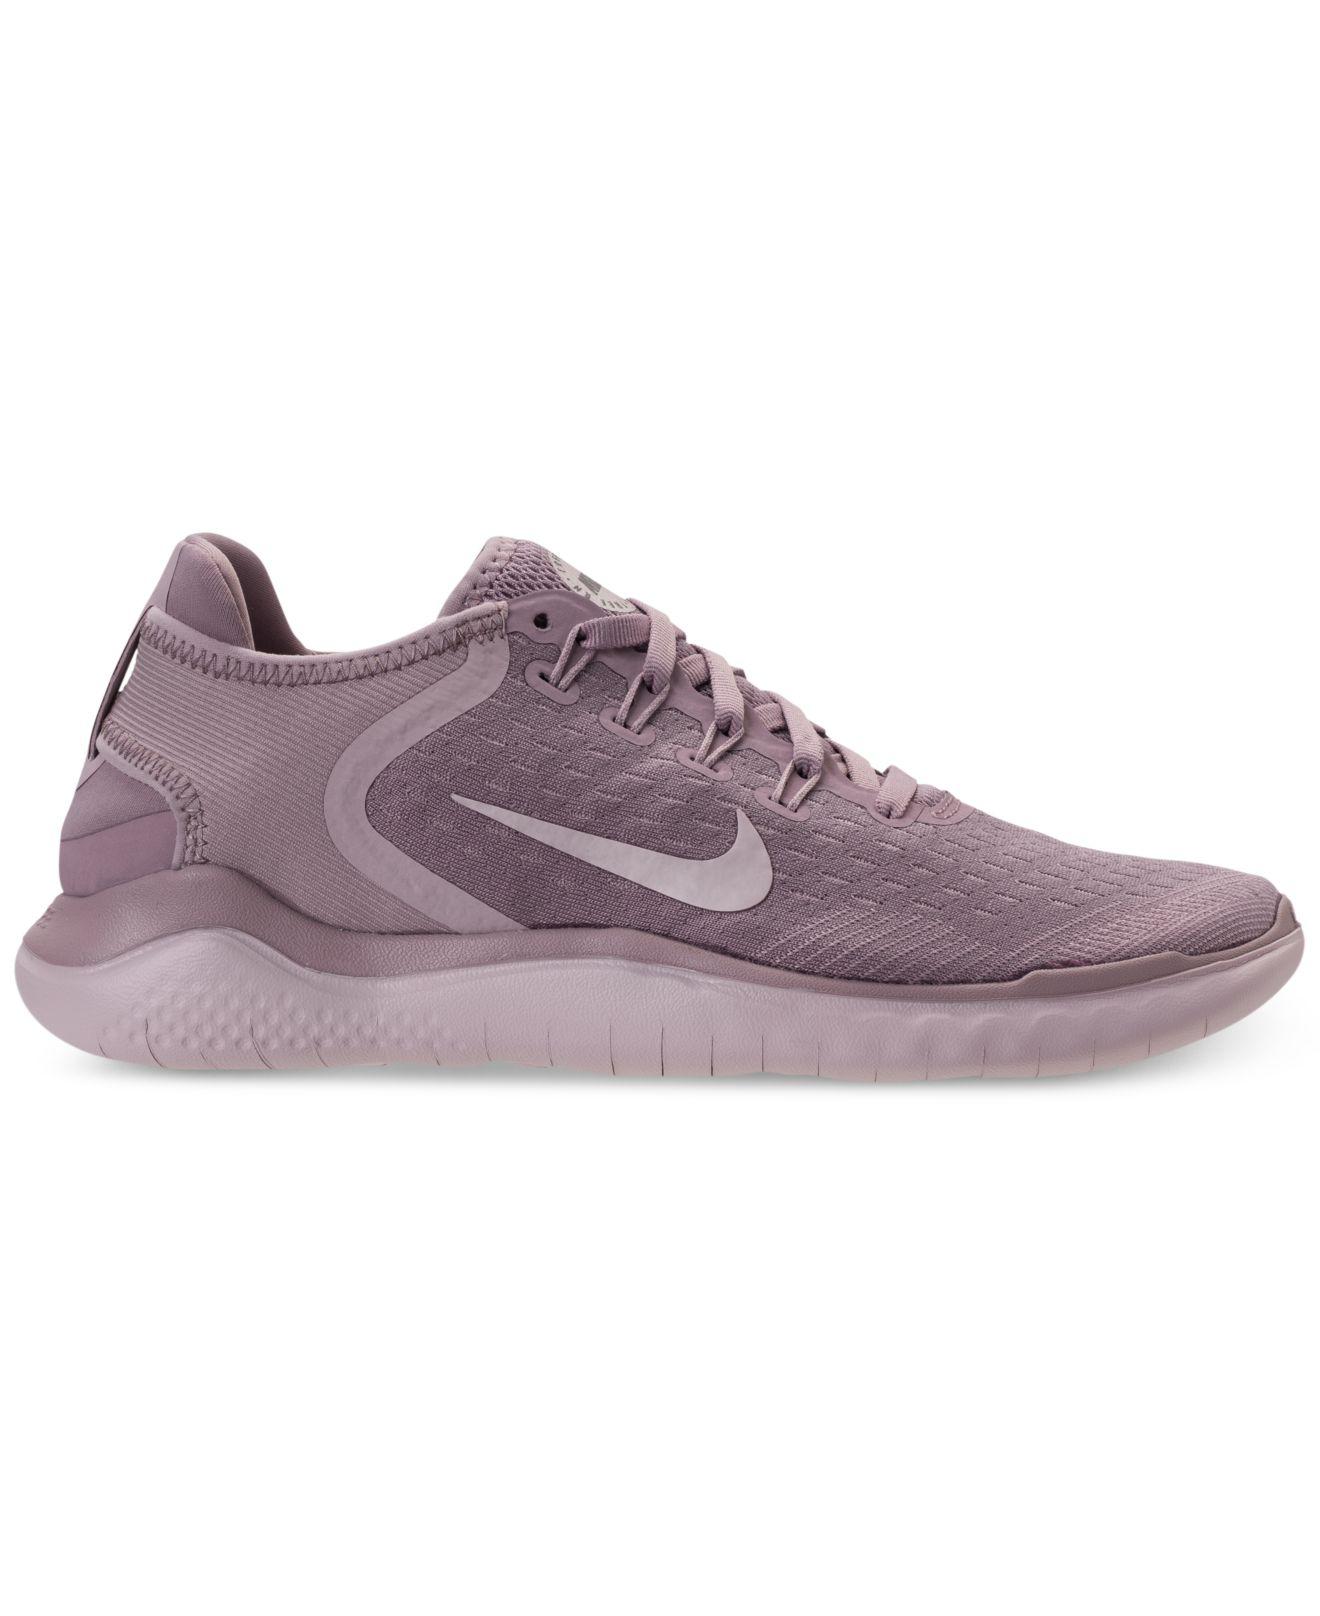 Nike Synthetic Free Rn 2018 Running Sneaker in Purple - Lyst